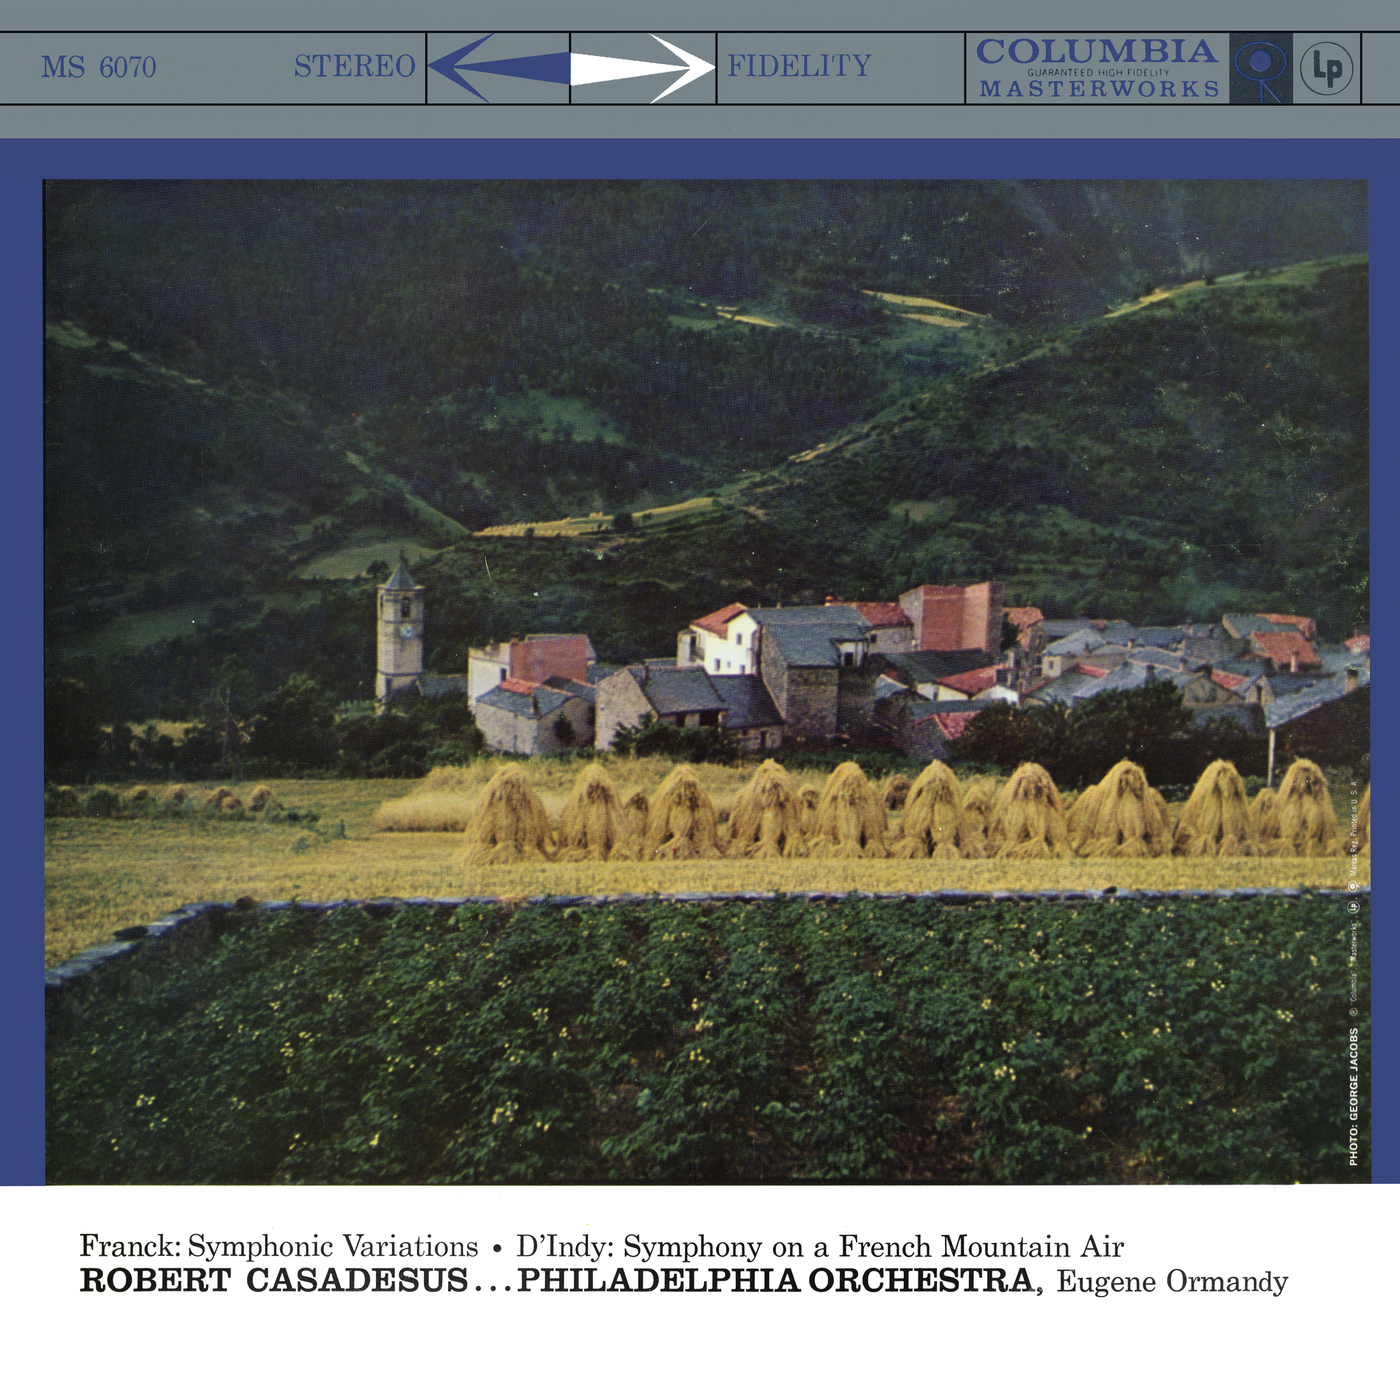 Franck: Variations symphoniques, FWV 46  D' Indy: Symphonie sur un chant montagnard fran ais, Op. 25